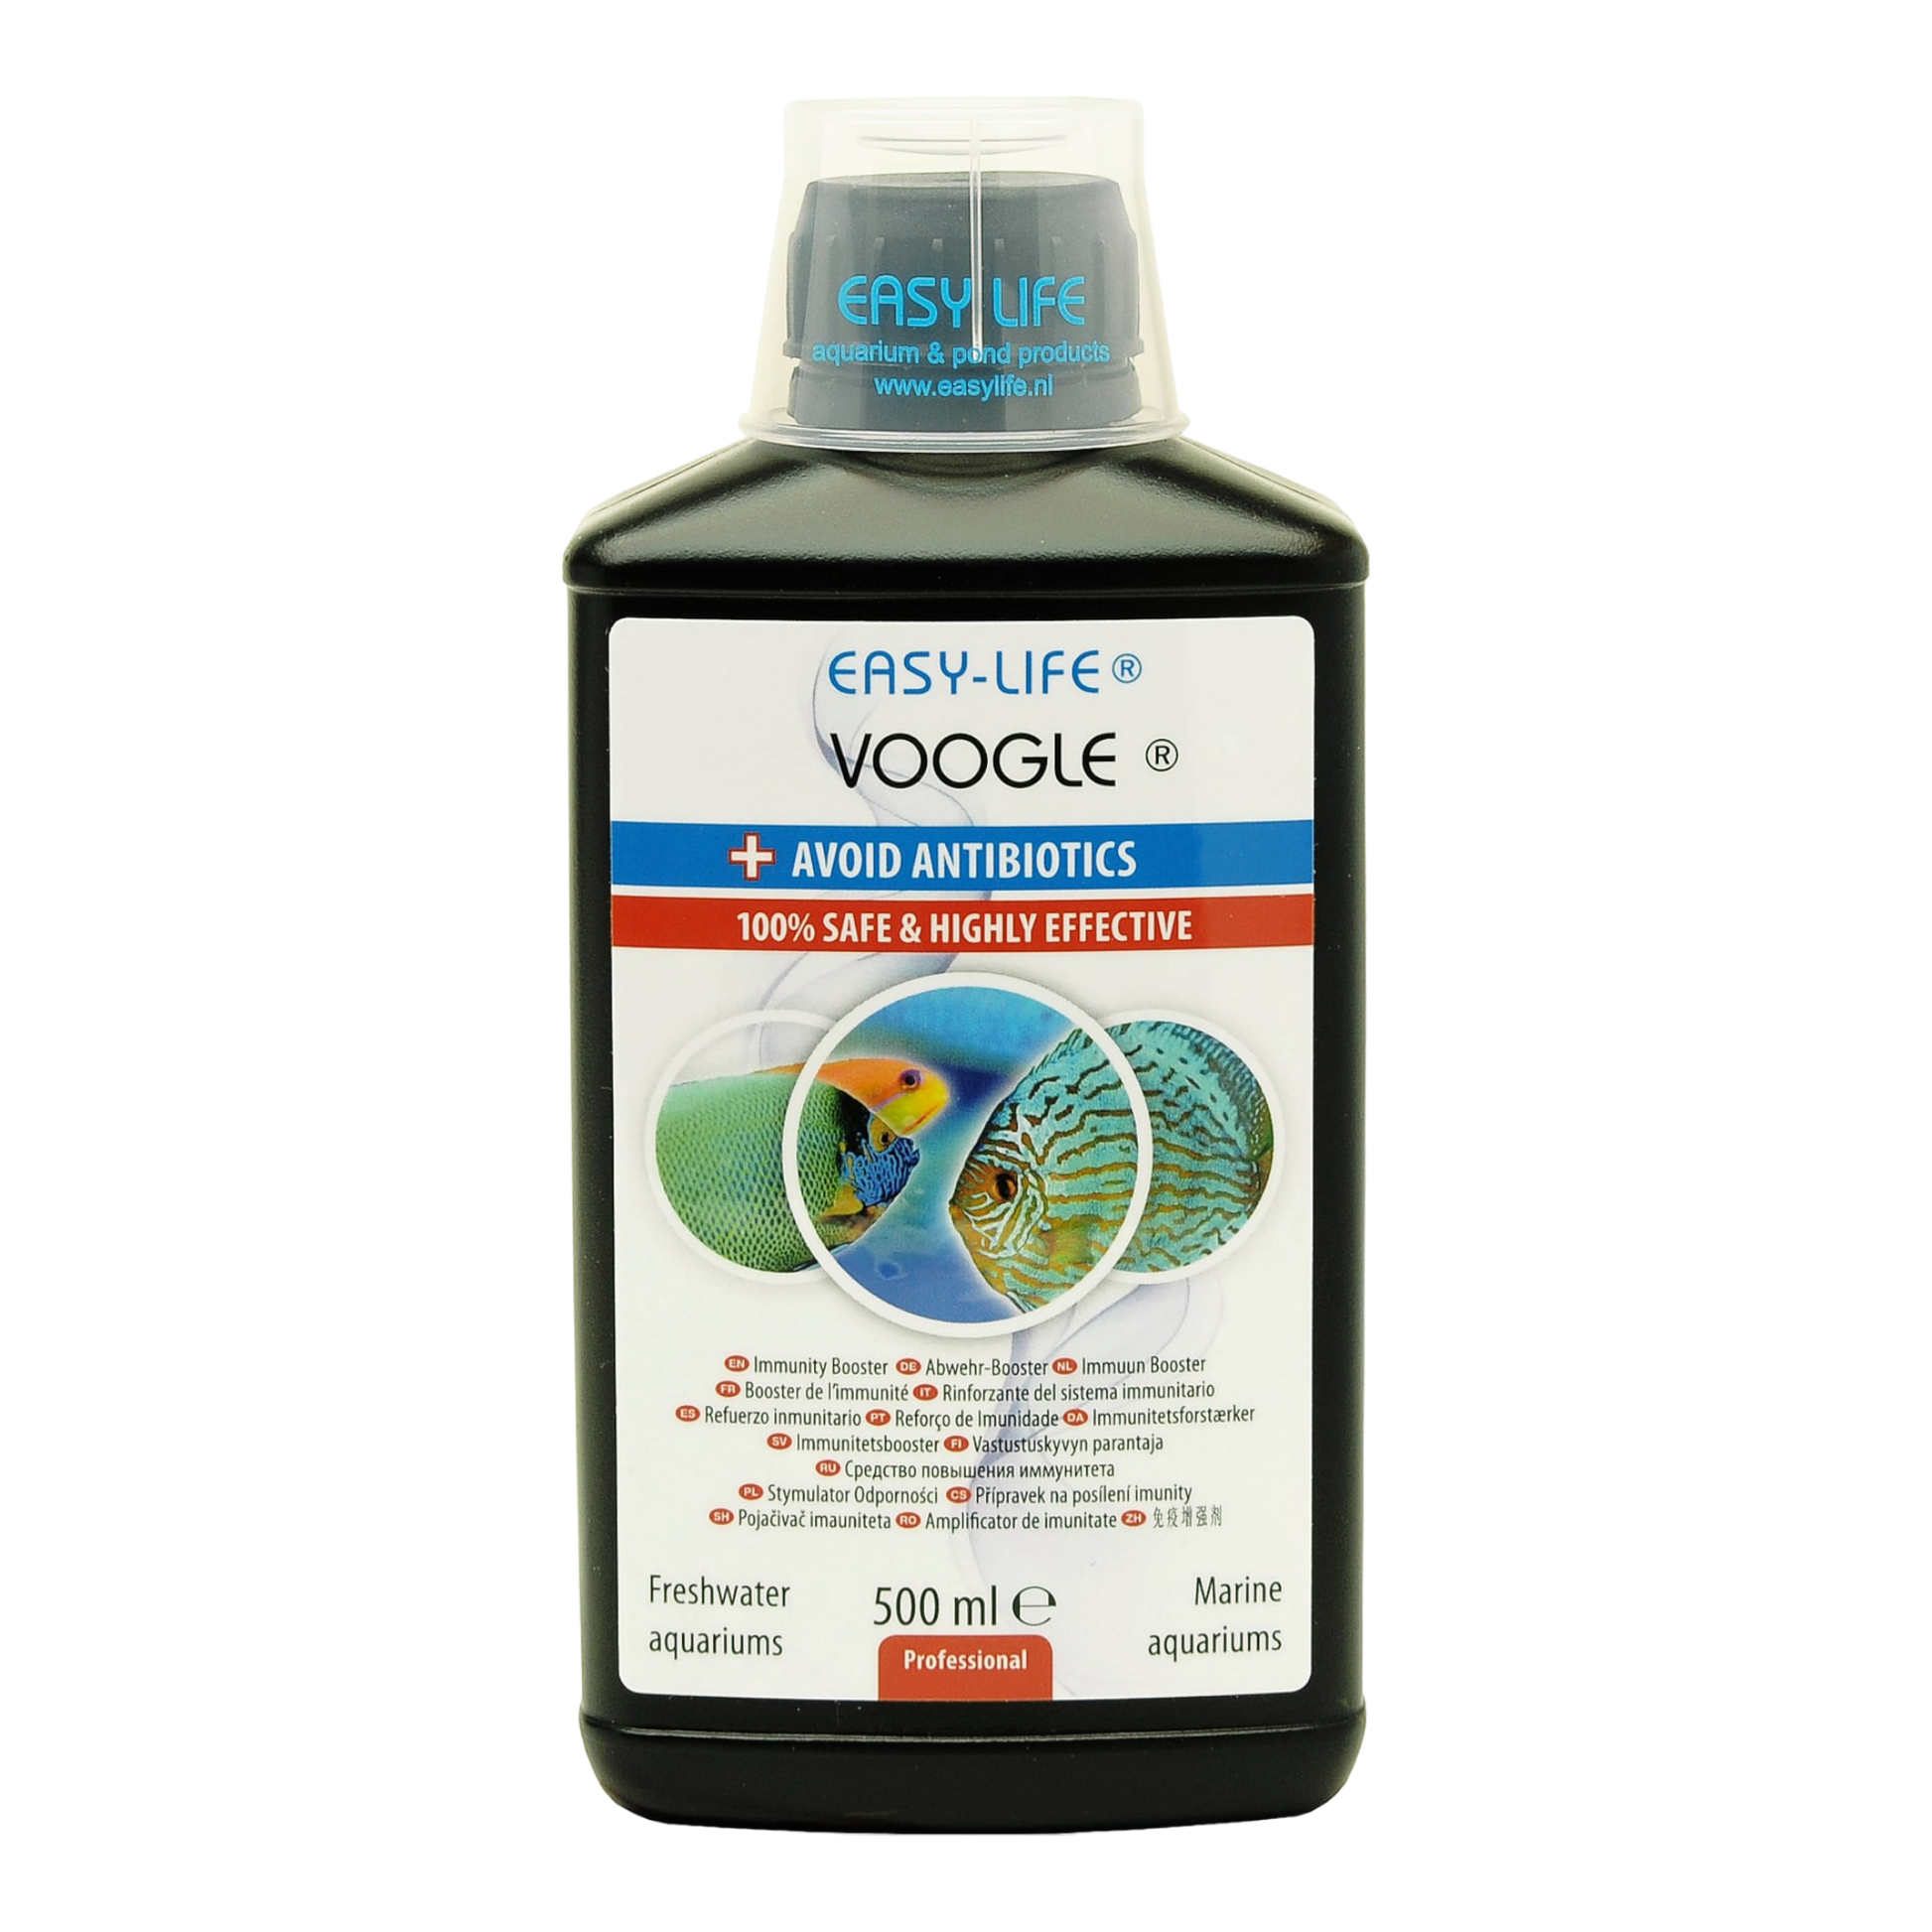 Voogle ist ein innovatives Mittel  das die Gesundheit von Fischen unterstützt und das Immunsystem stärkt. Die Verwendung von Voogle beschränkt die Anwendung von Antibiotika auf ein Minimum. Das natürliche Immunsystem wird angeregt, und damit sind die Fische in der Lage, sich selbst besser gegen Krankheiten zu schützen.